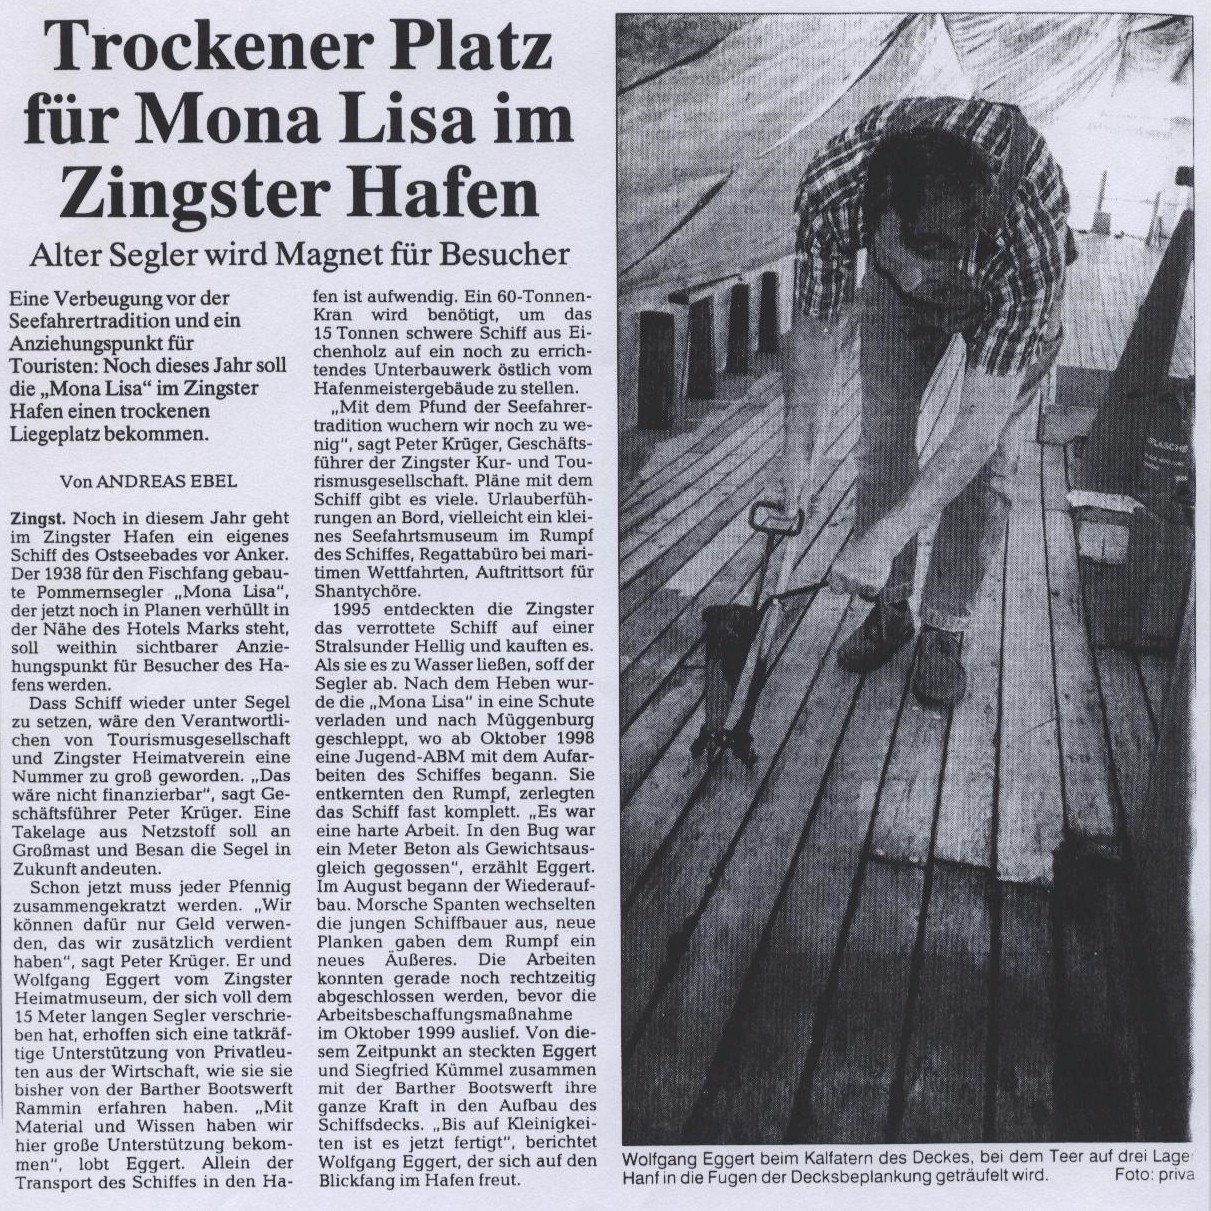 Artikel in der Ostseezietung - Lokalausgabe Ribnitz-Damgarten vom 13. Mrz 2002